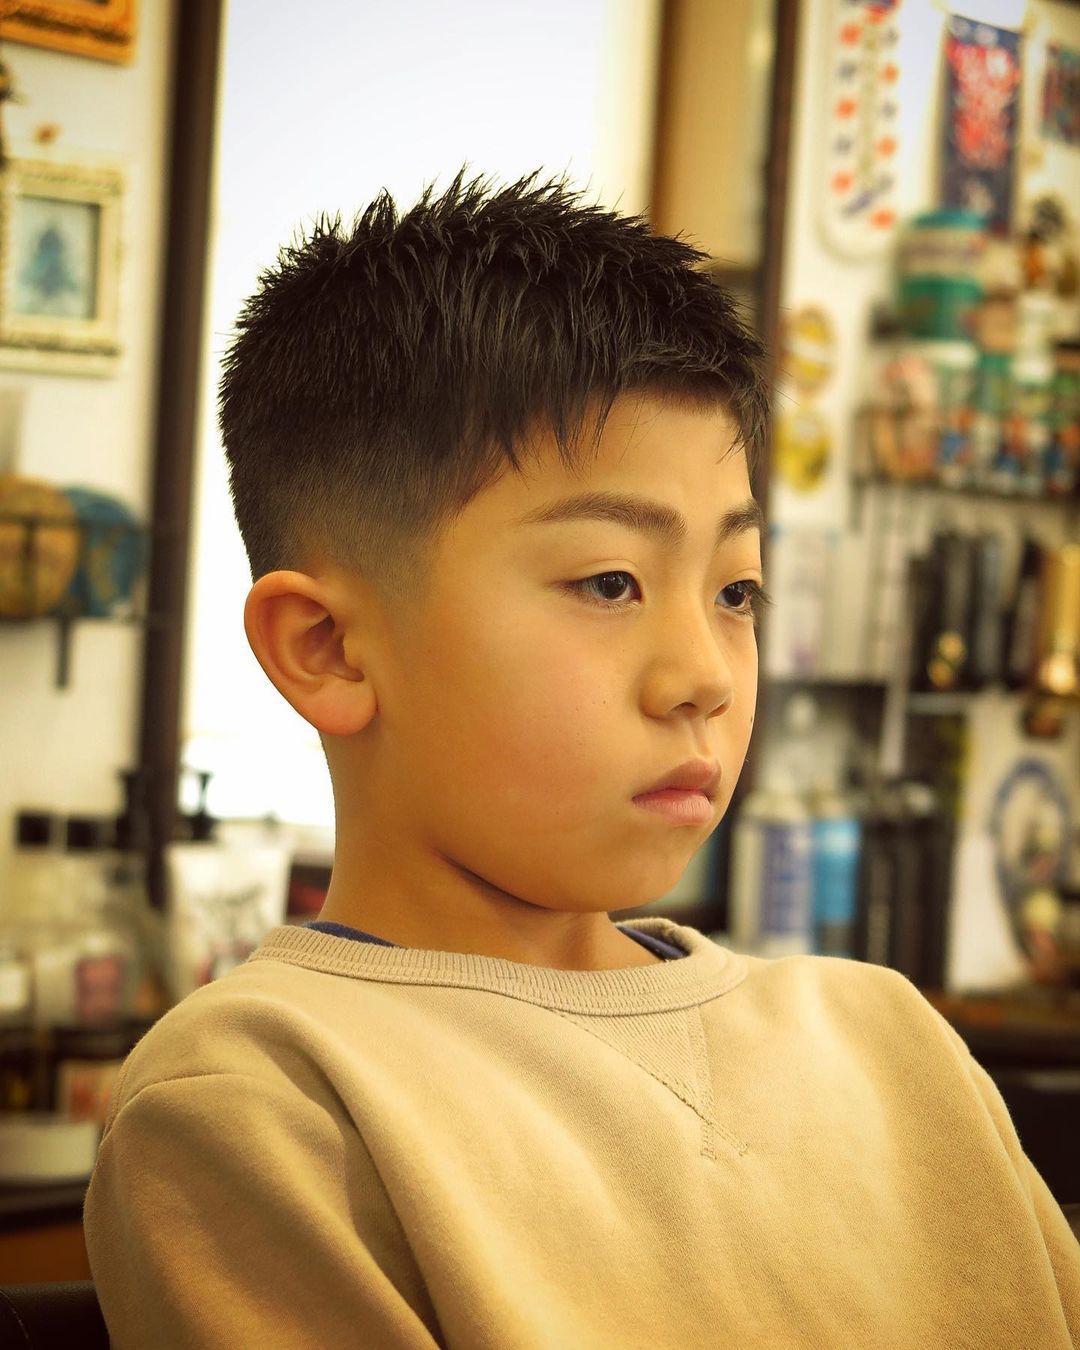 帅气小男孩发型图片,儿童发型男8一9岁寸头 - 伤感说说吧